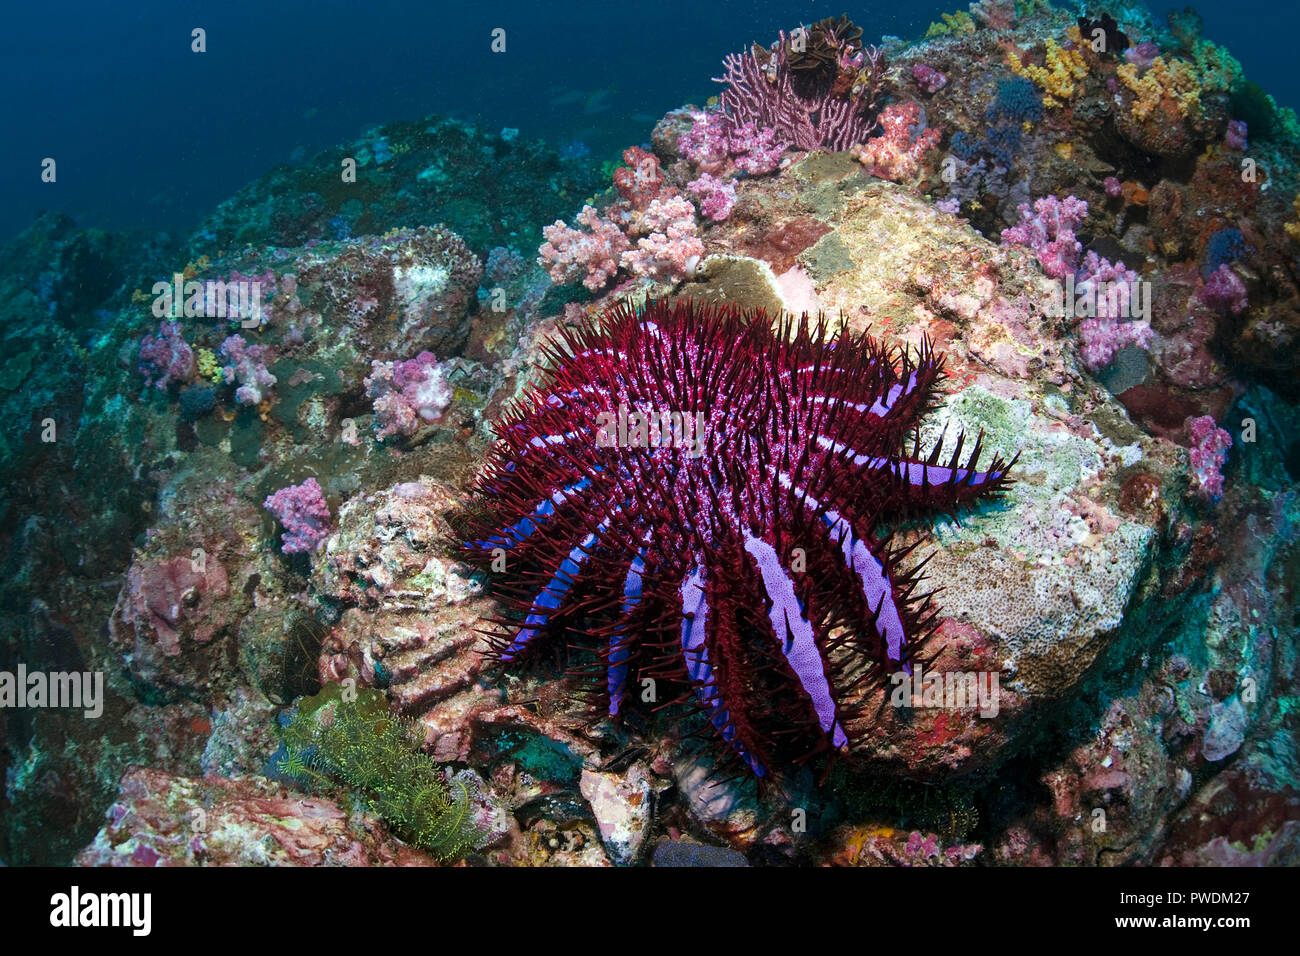 La couronne d'étoile de mer Acanthaster planci se nourrit de coraux vivants, Birmanie, Myanmar Banque D'Images